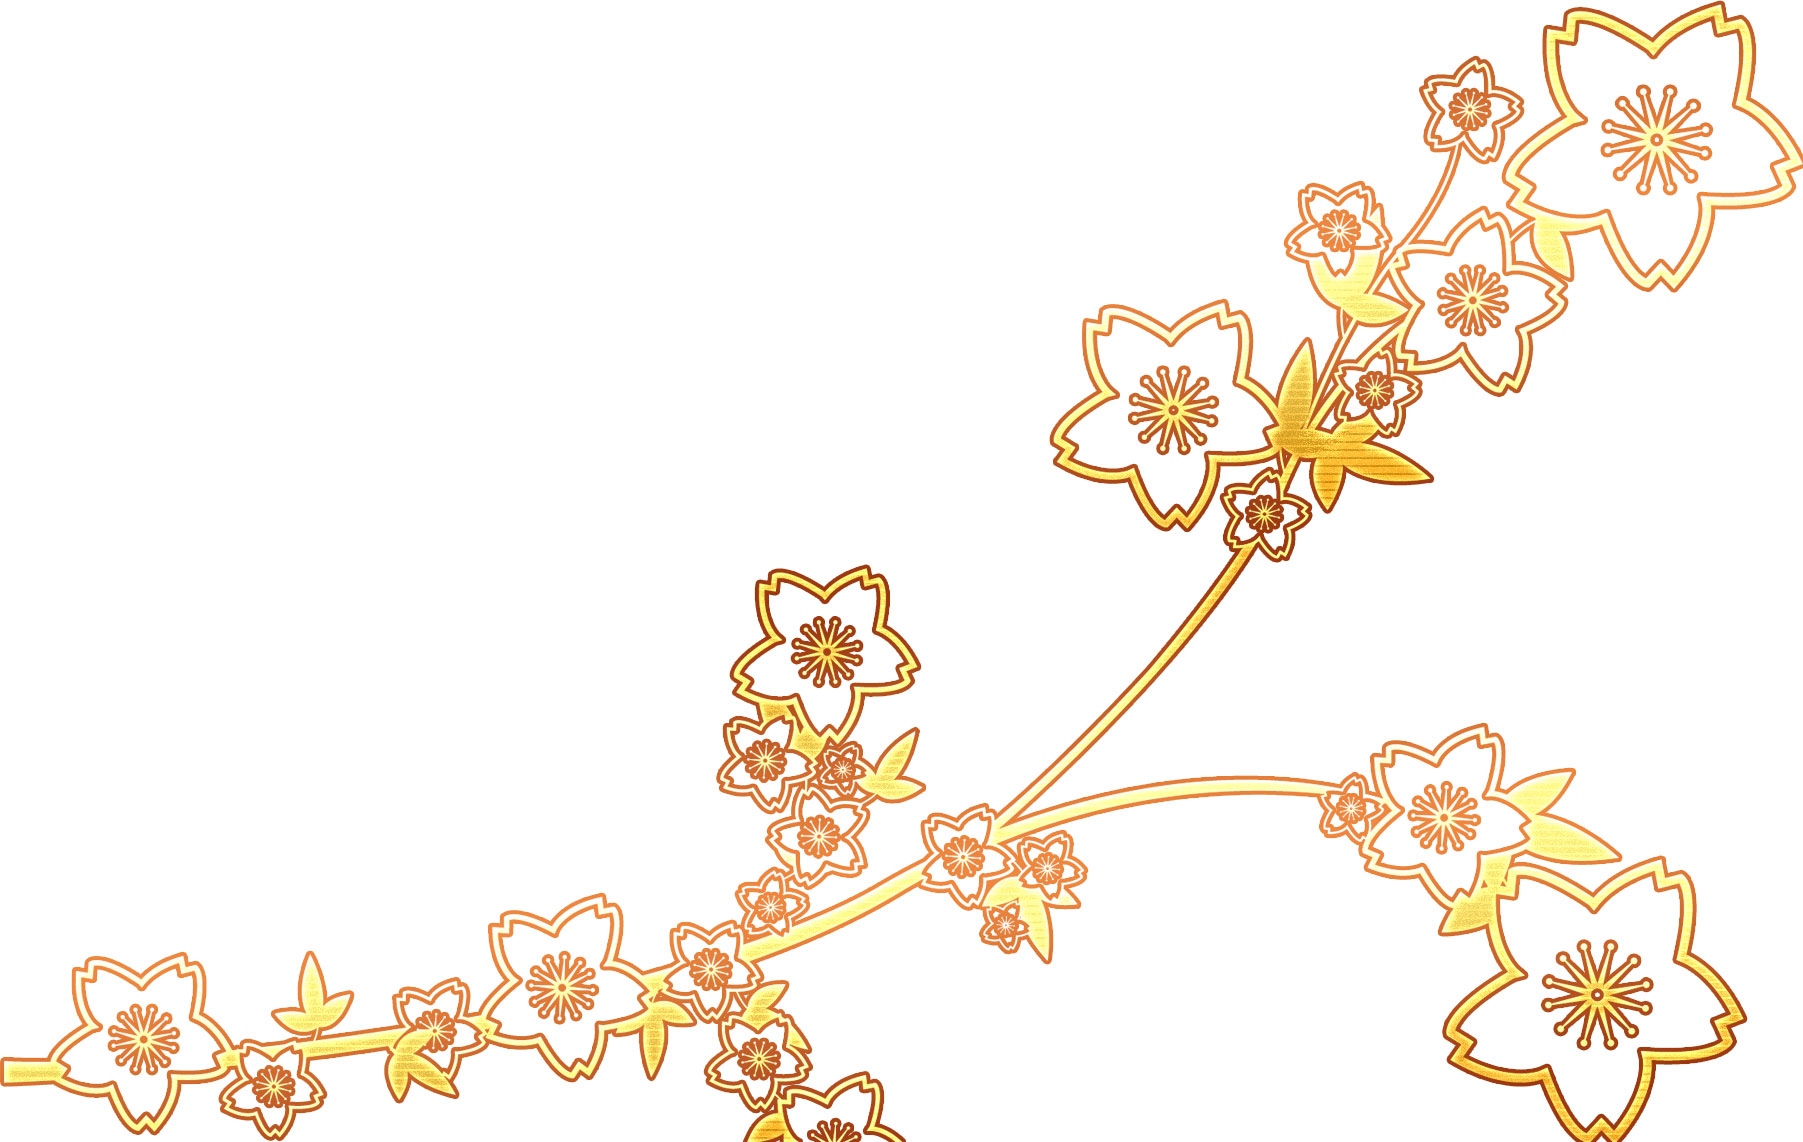 可愛い花のイラスト-桜模様・ゴールド